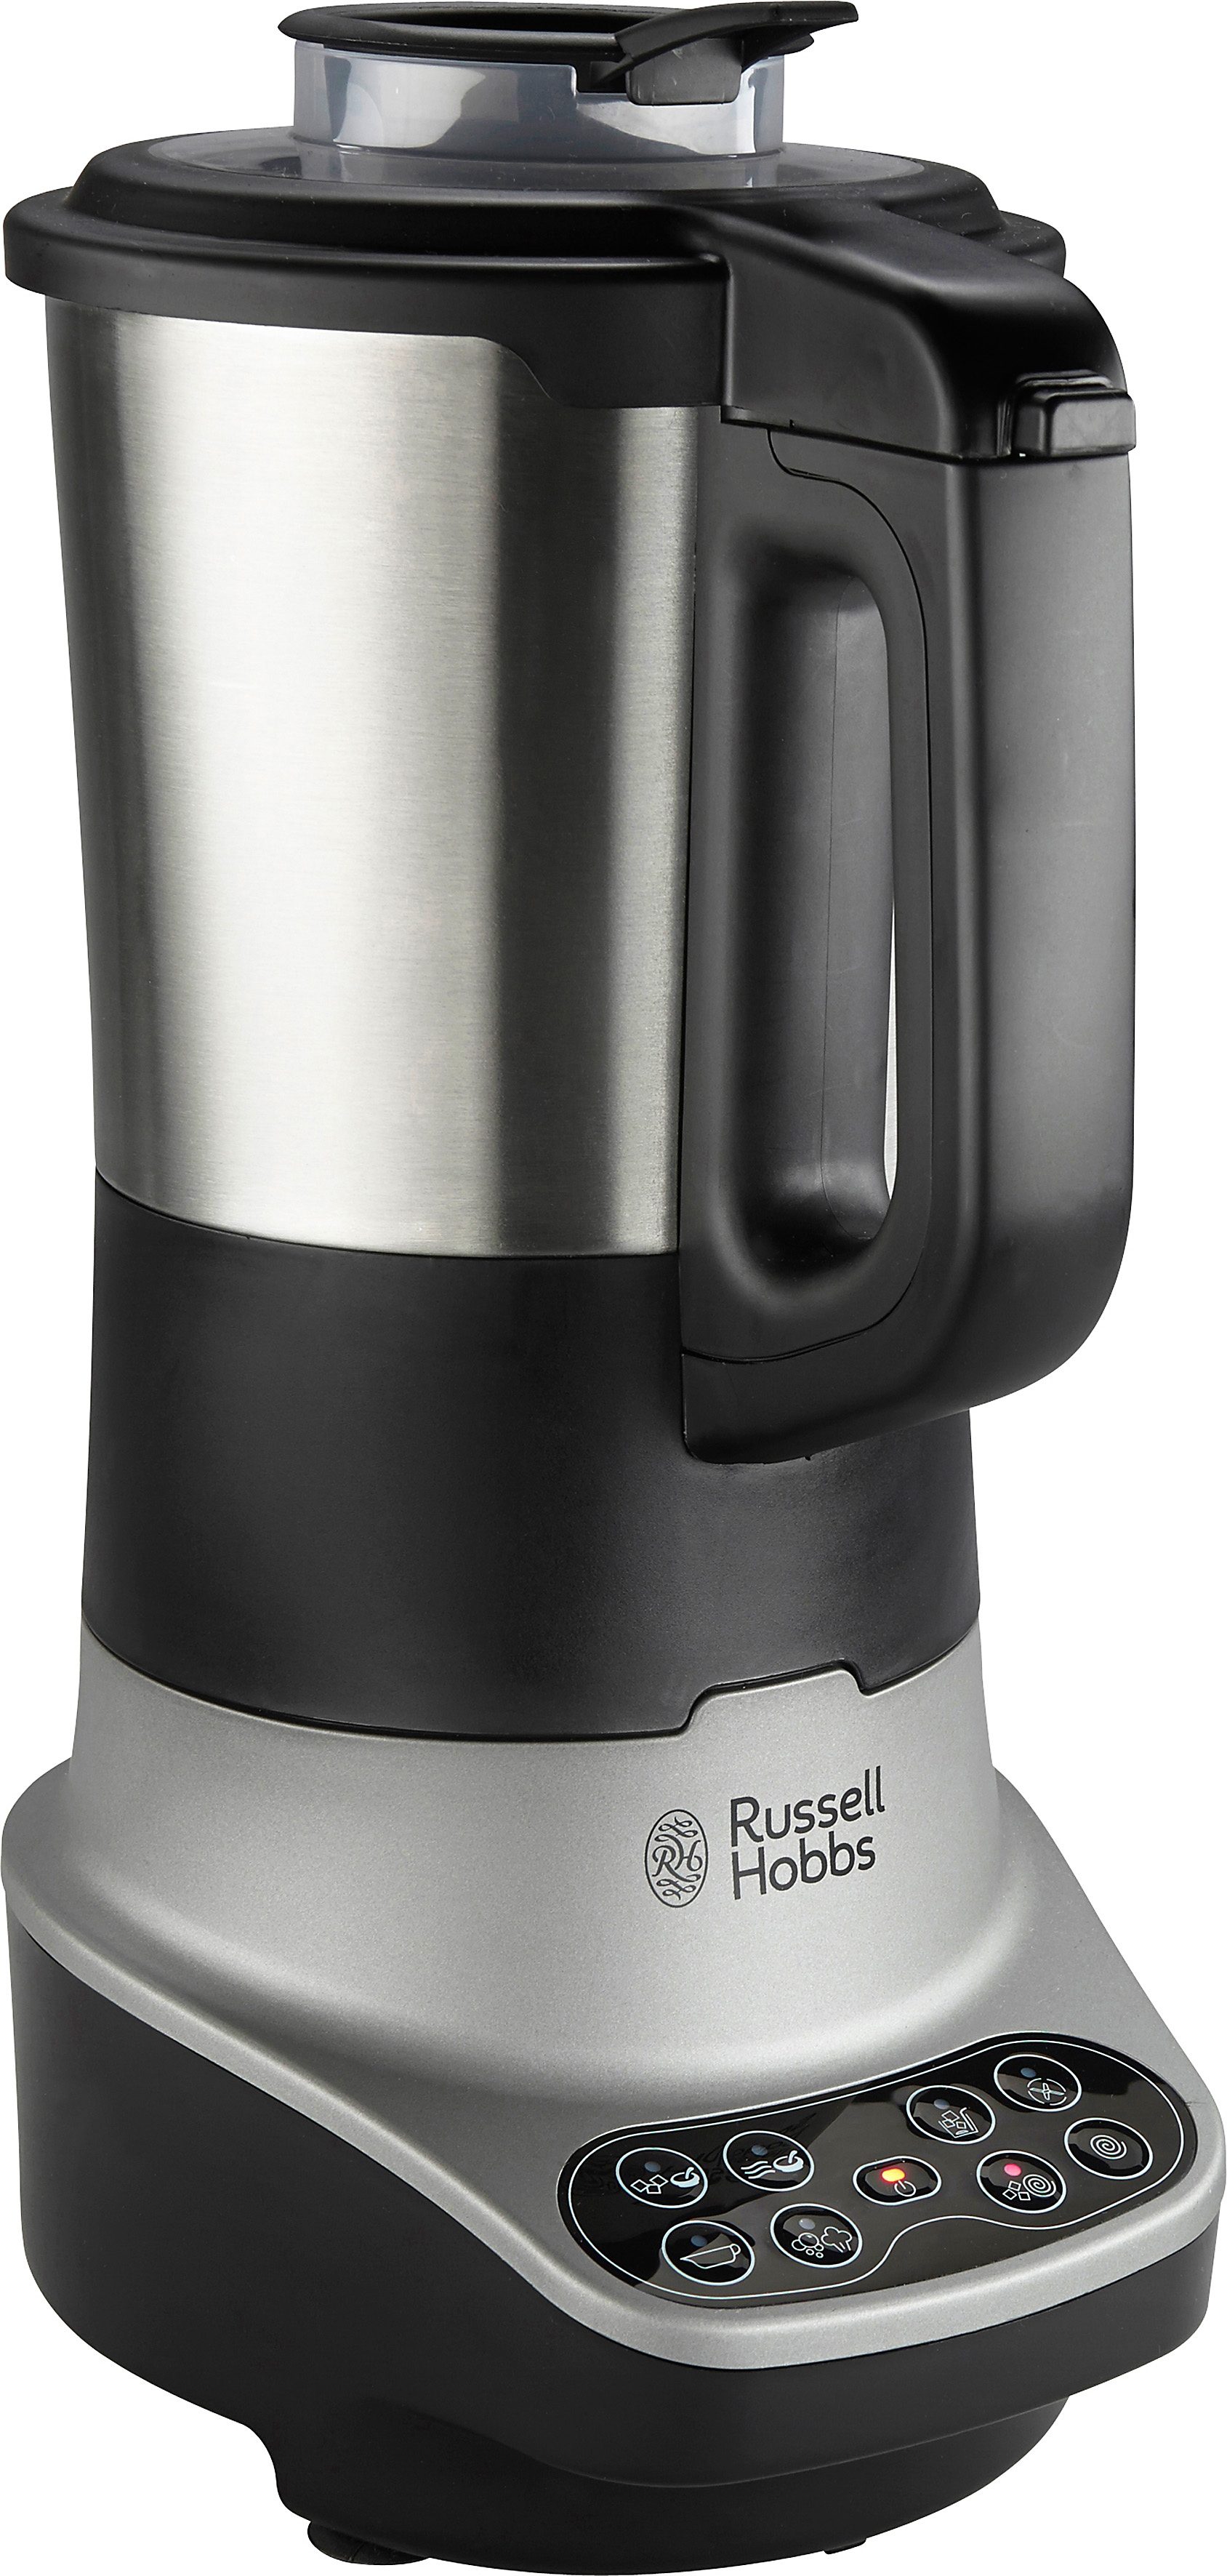 RUSSELL HOBBS Standmixer mit Kochfunktion 21480-56, 800 W, 8 Programme  online kaufen | OTTO